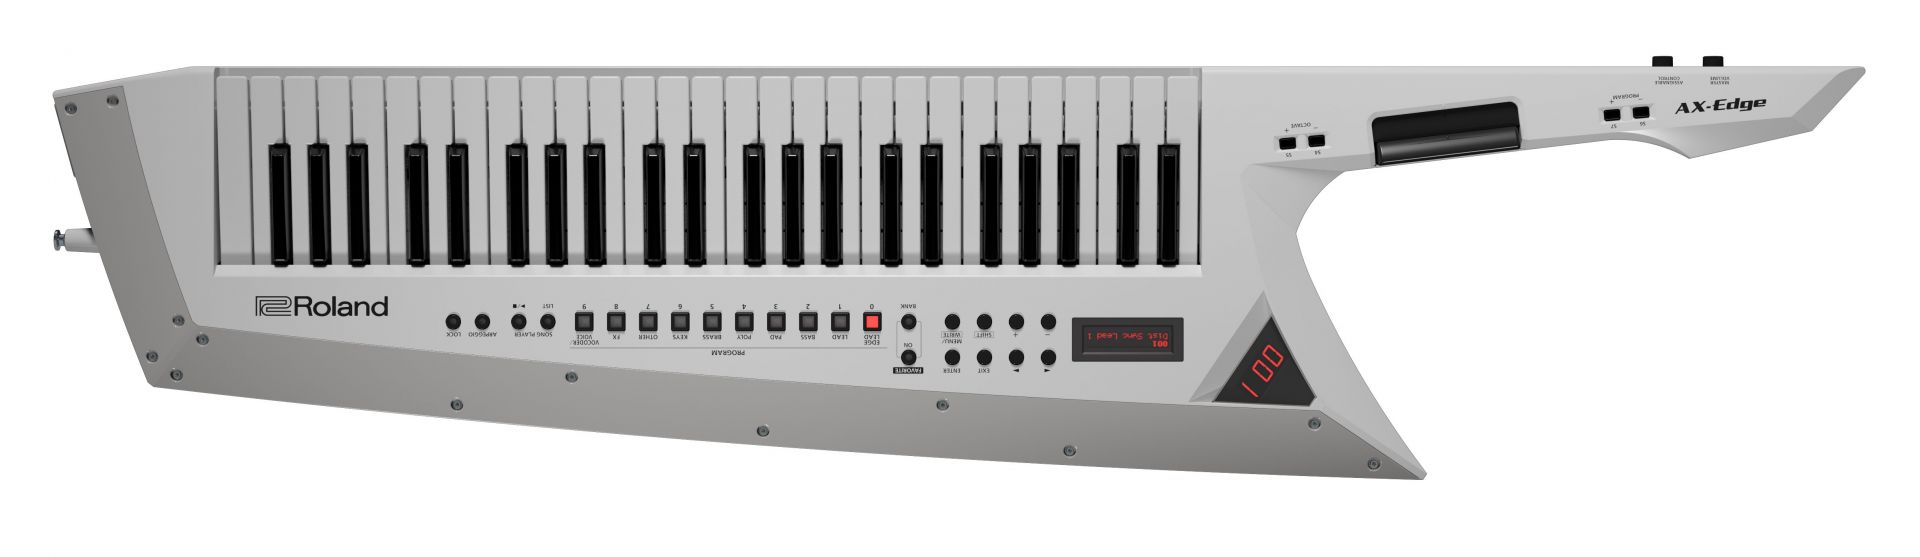 【新製品】Roland AX-Edge 待望のショルダーキーボード【初回入荷僅少！売切必至！】